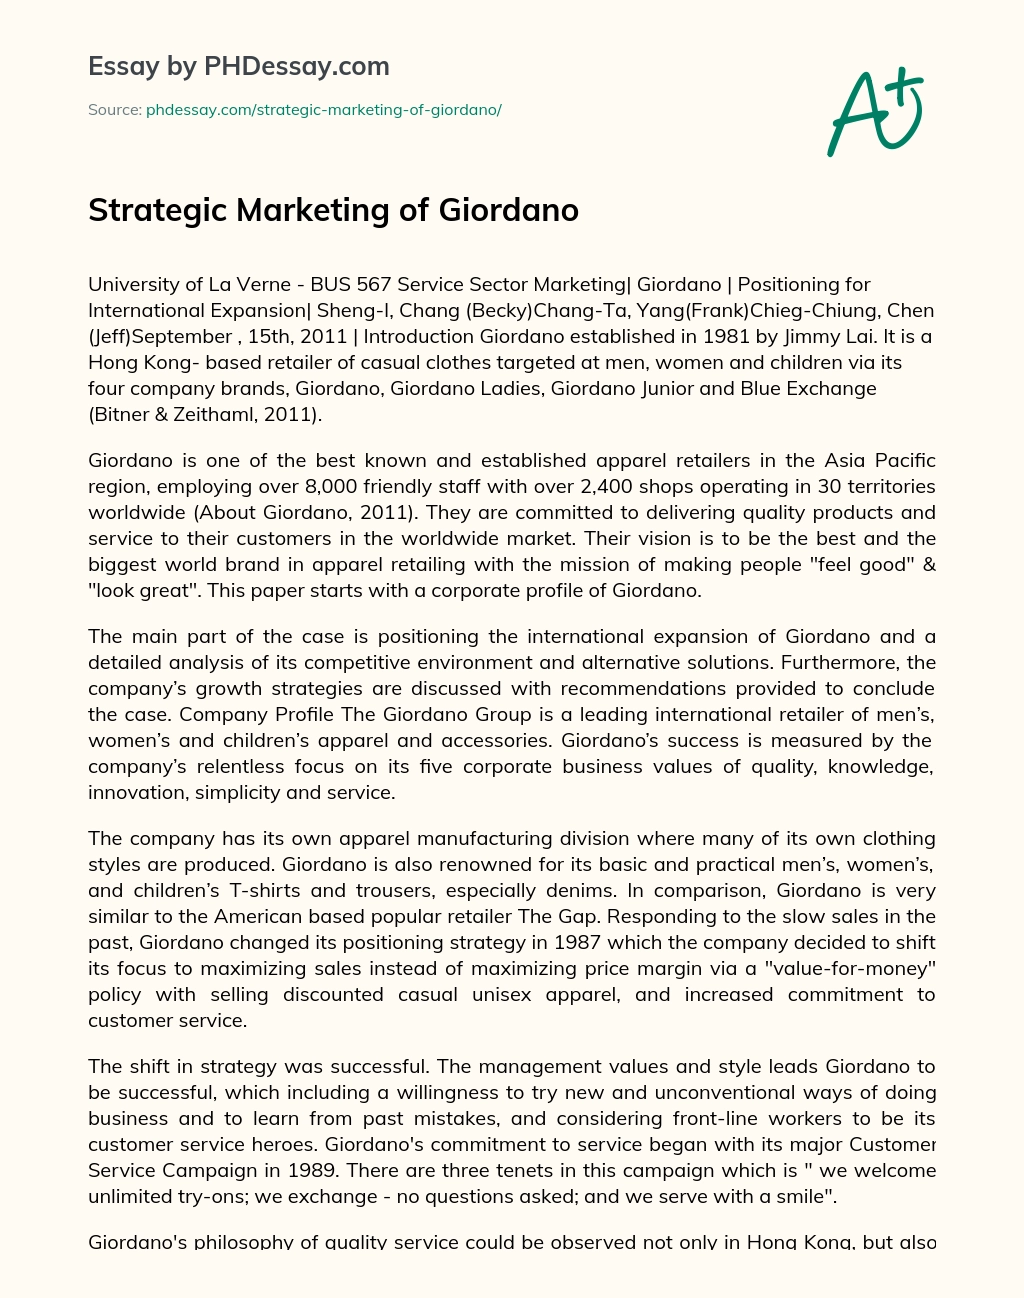 Strategic Marketing of Giordano essay